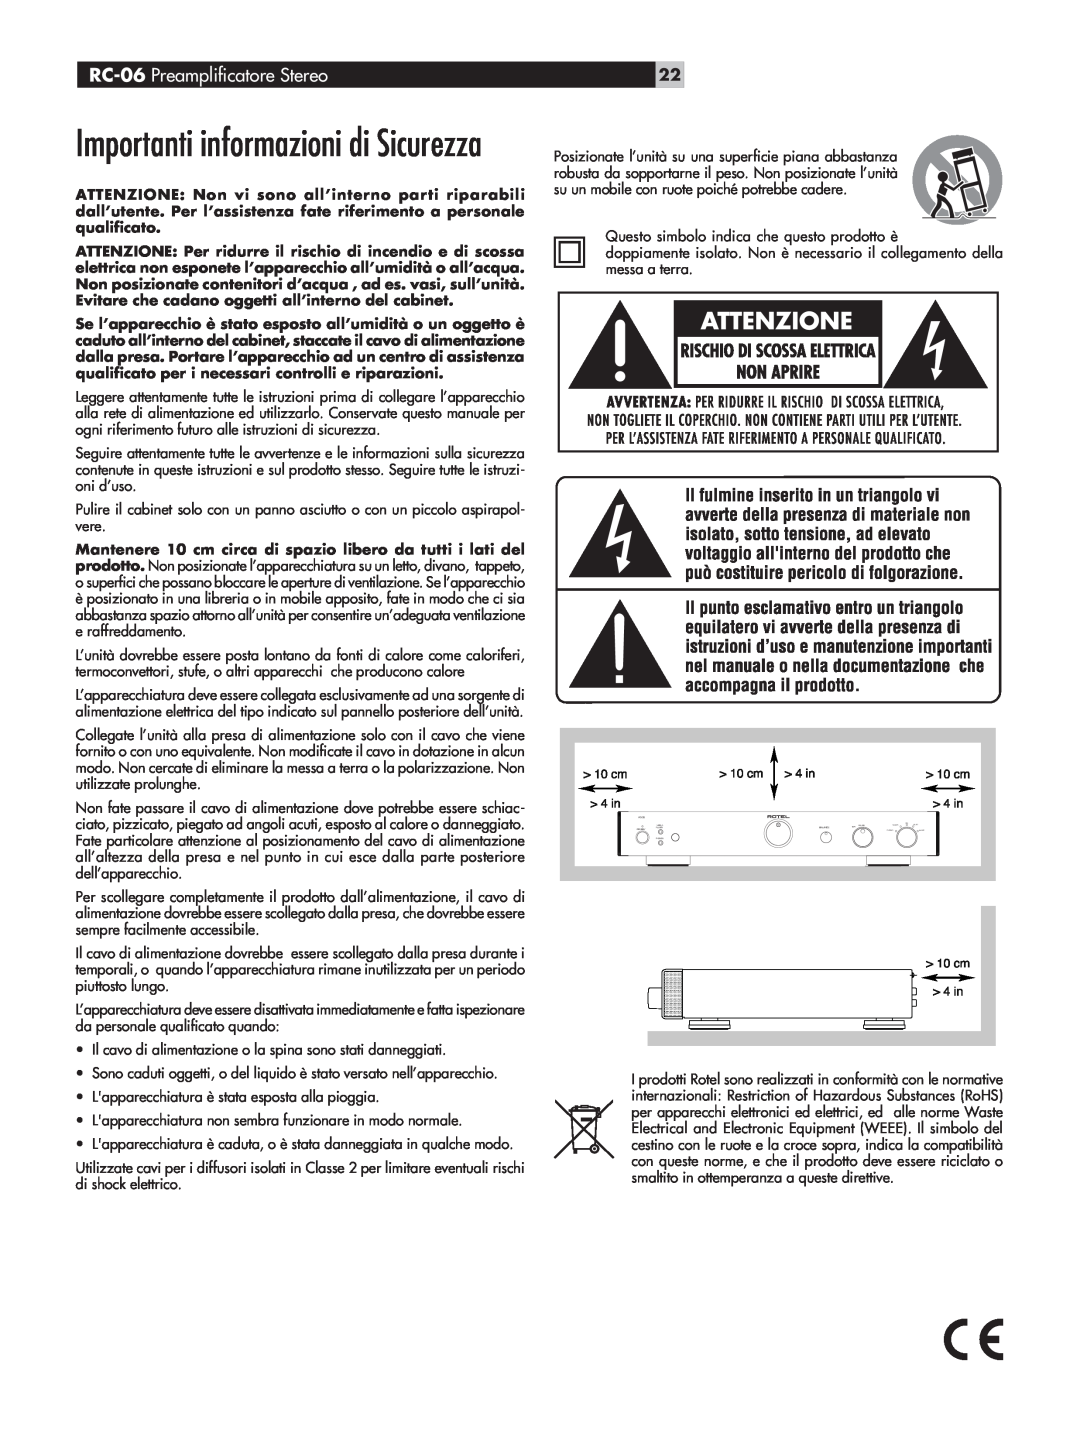 Rotel owner manual Importanti informazioni di Sicurezza, RC-06 Preampliﬁcatore Stereo 